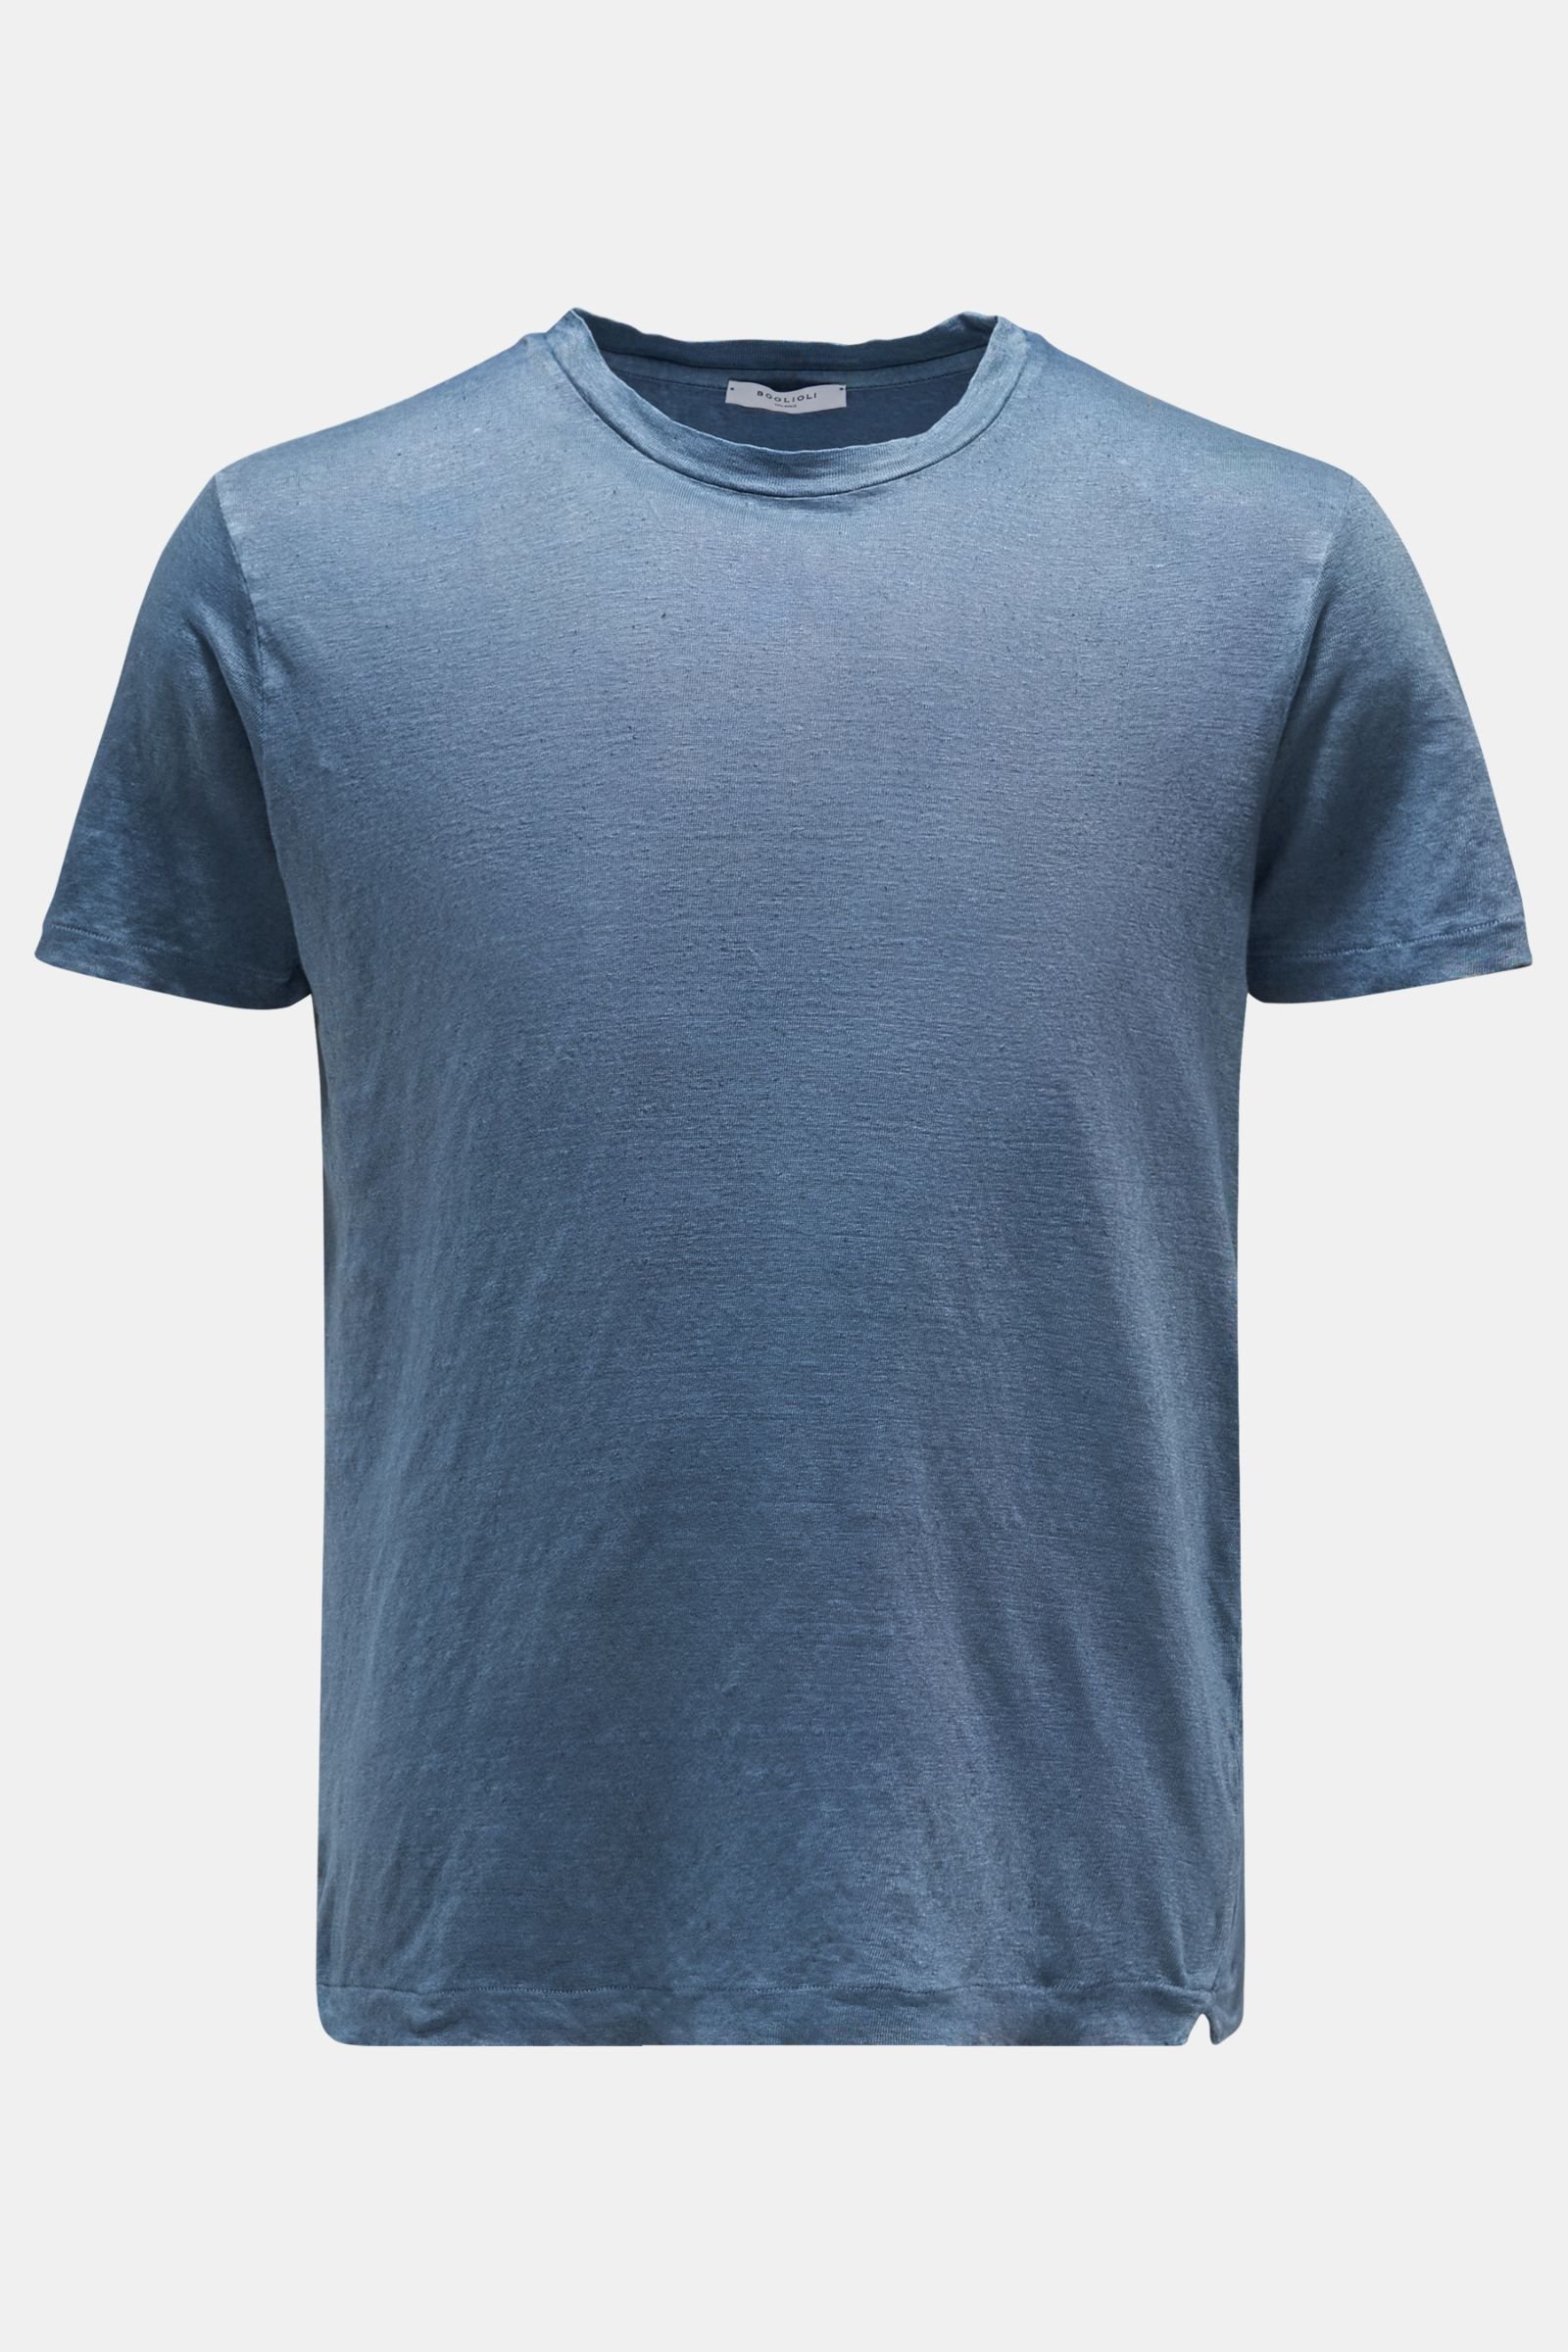 Leinen Rundhals-T-Shirt graublau